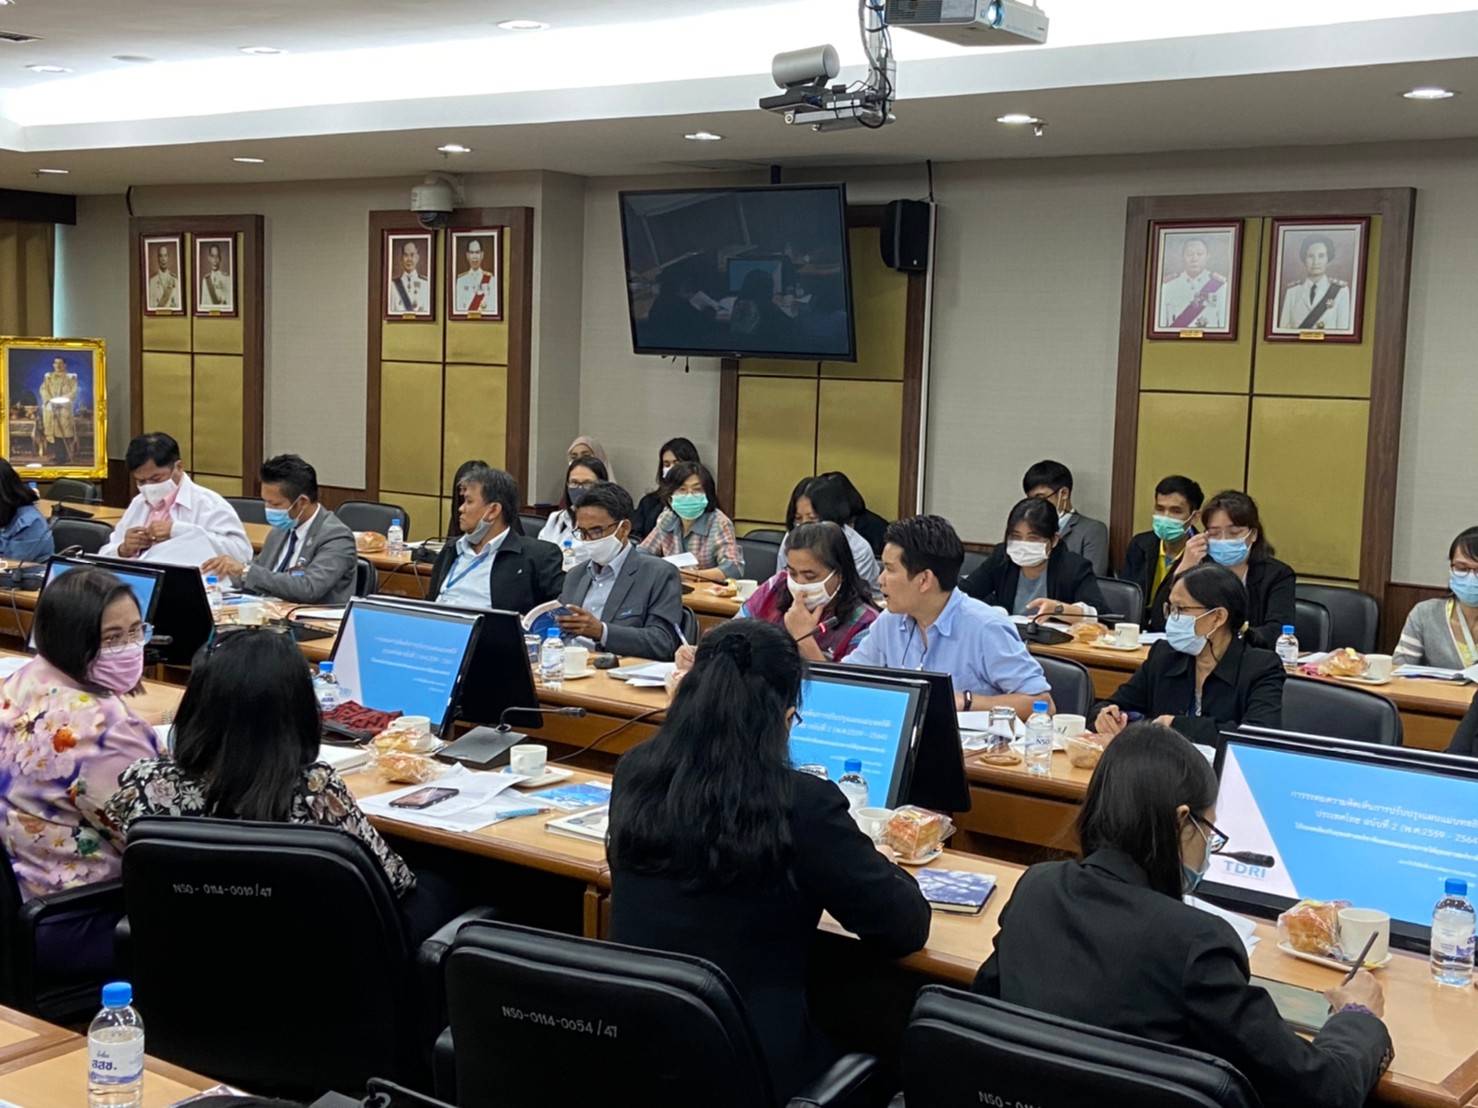  ประชุม การปรับปรุงแผนแม่บทระบบสถิติประเทศไทย